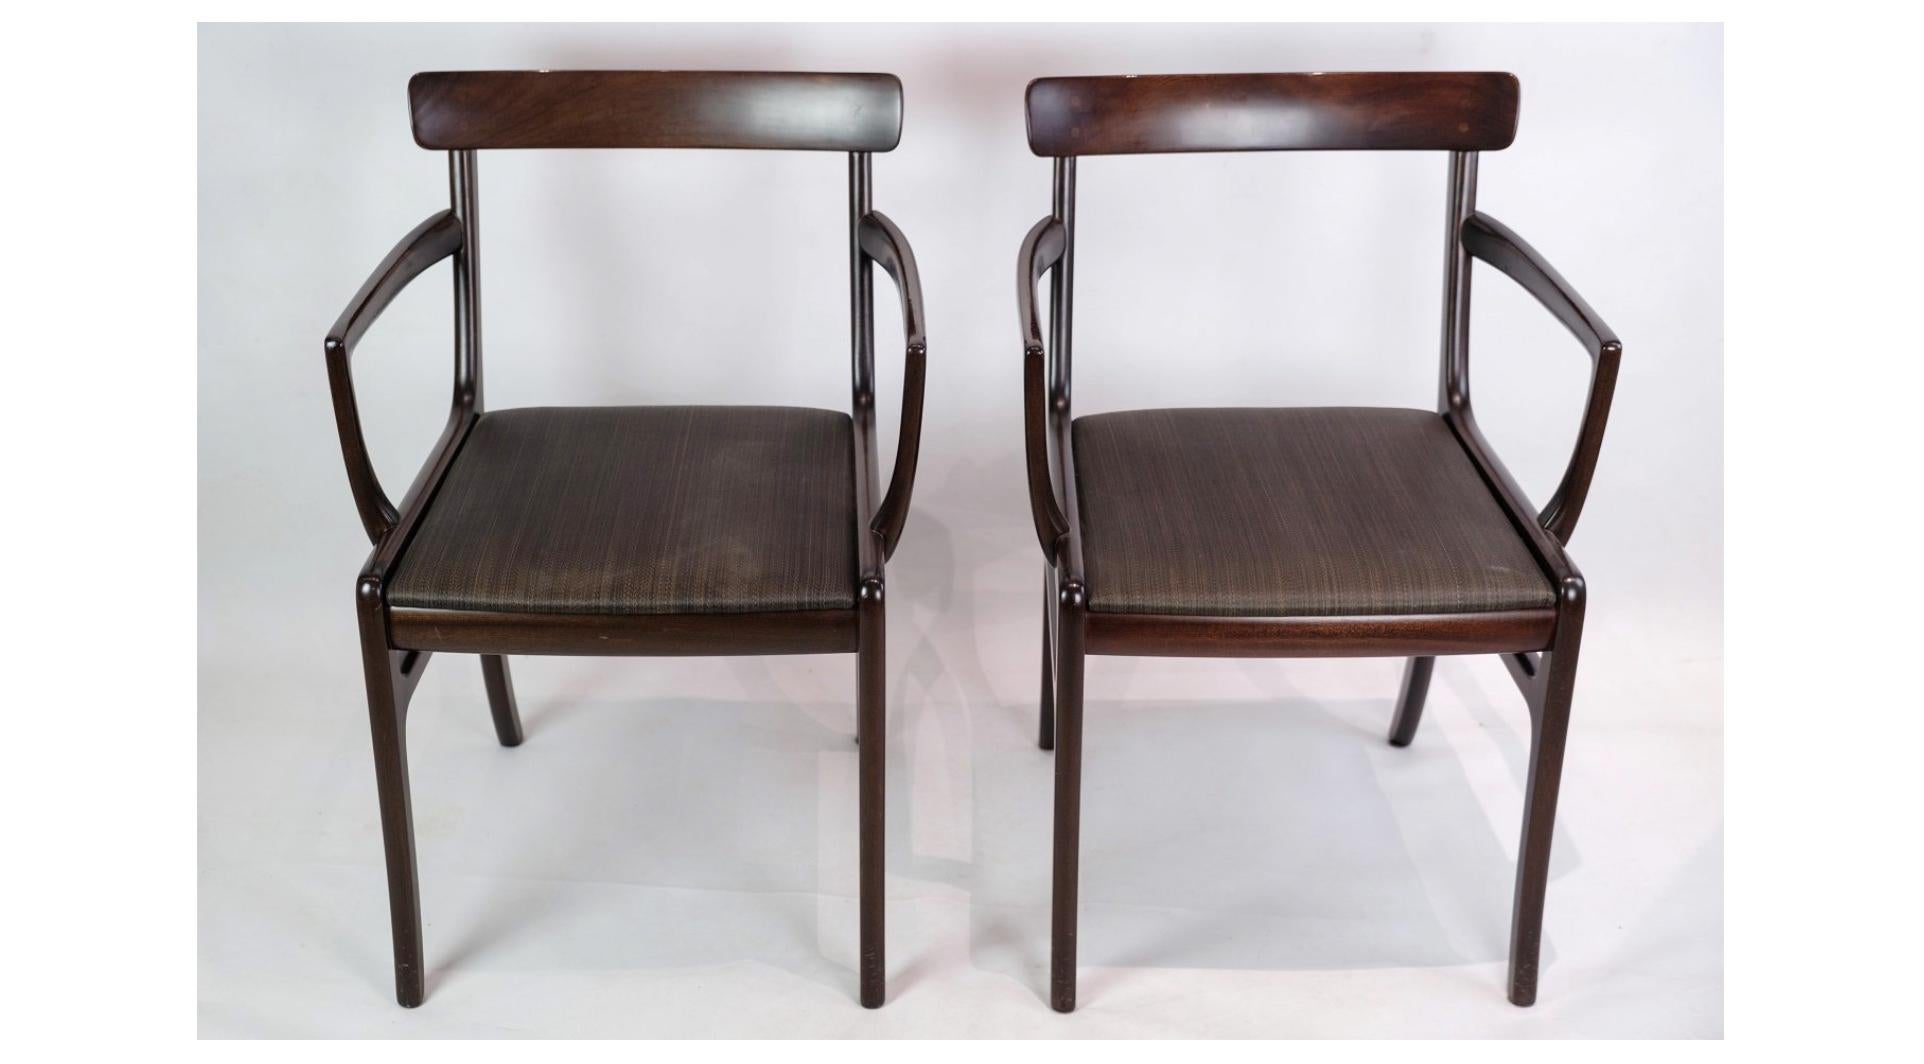 Ein Paar Rungstedlund-Sessel aus Mahagoni, bezogen mit schwarzem Leder, ist ein brillantes Beispiel für Ole Wanschers zeitloses Design, das Ästhetik und Funktionalität auf sublime Weise verbindet.

Ole Wanscher, einer der bedeutendsten dänischen